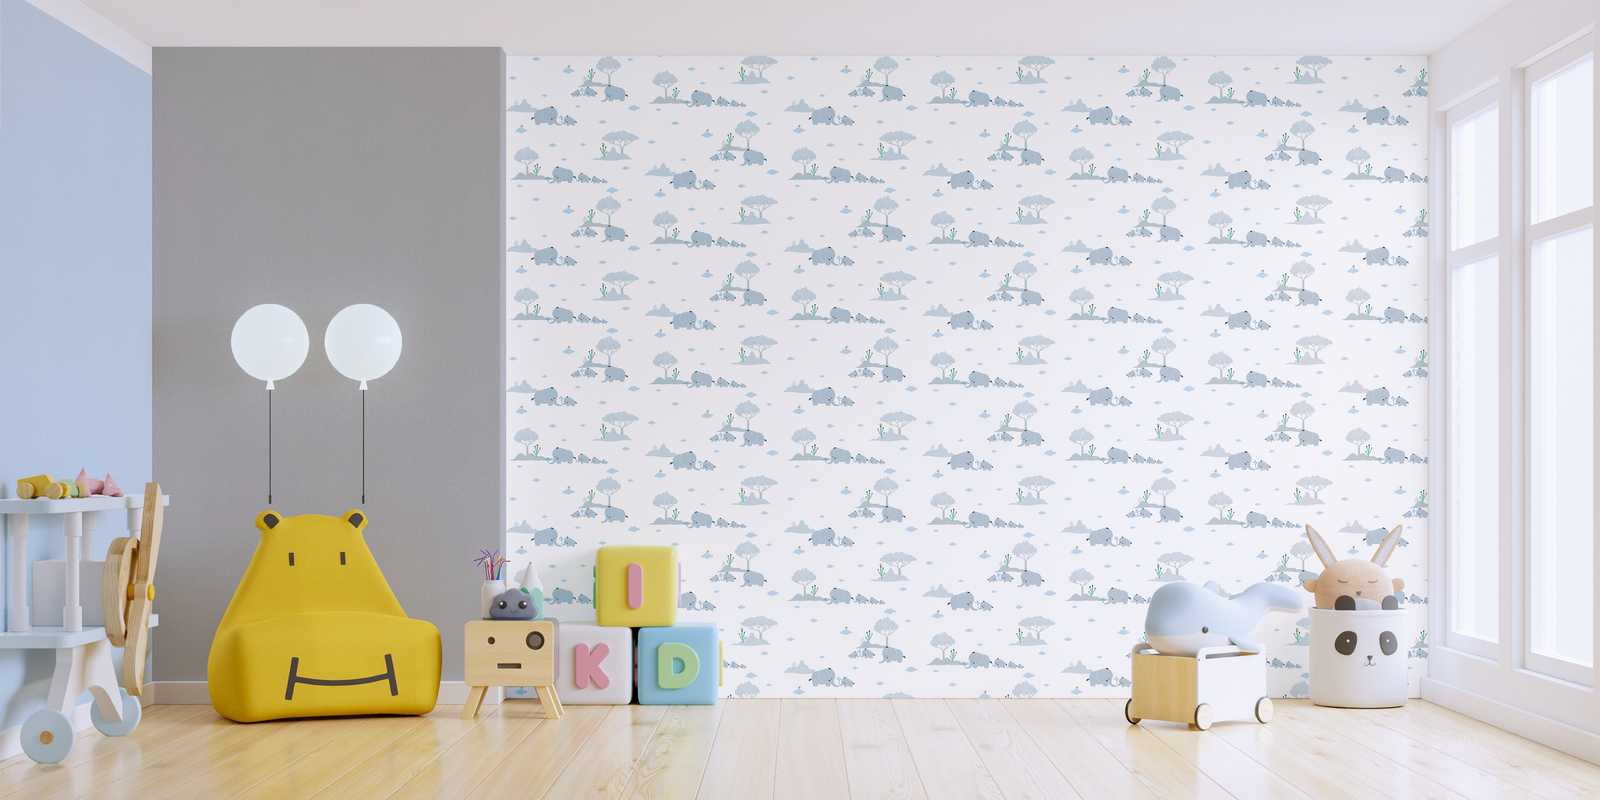             Papel pintado de habitación infantil niños elefantes y paisaje - azul, gris, blanco
        